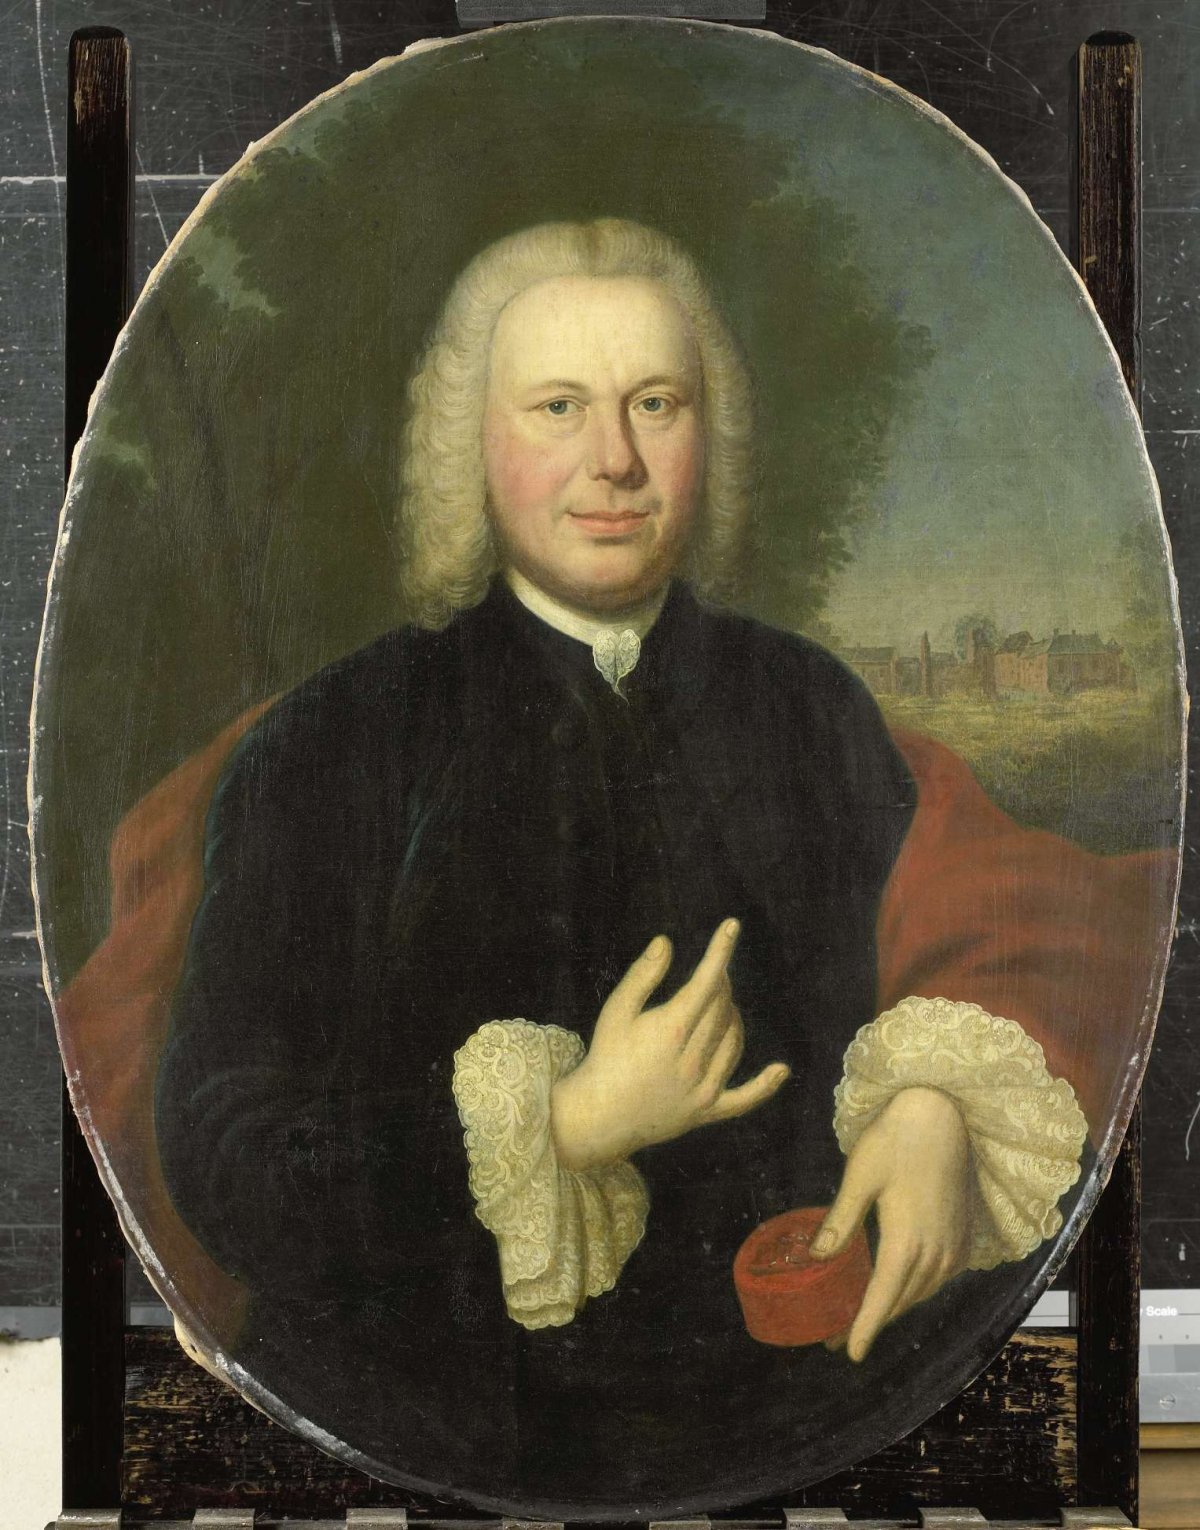 Diederik van Bleyswijk (1711-63), Baron of Eethen and Meeuwen, Lord of Babiloniënbroek, Burgomaster of Gorkum, Conrad Kuster, 1761